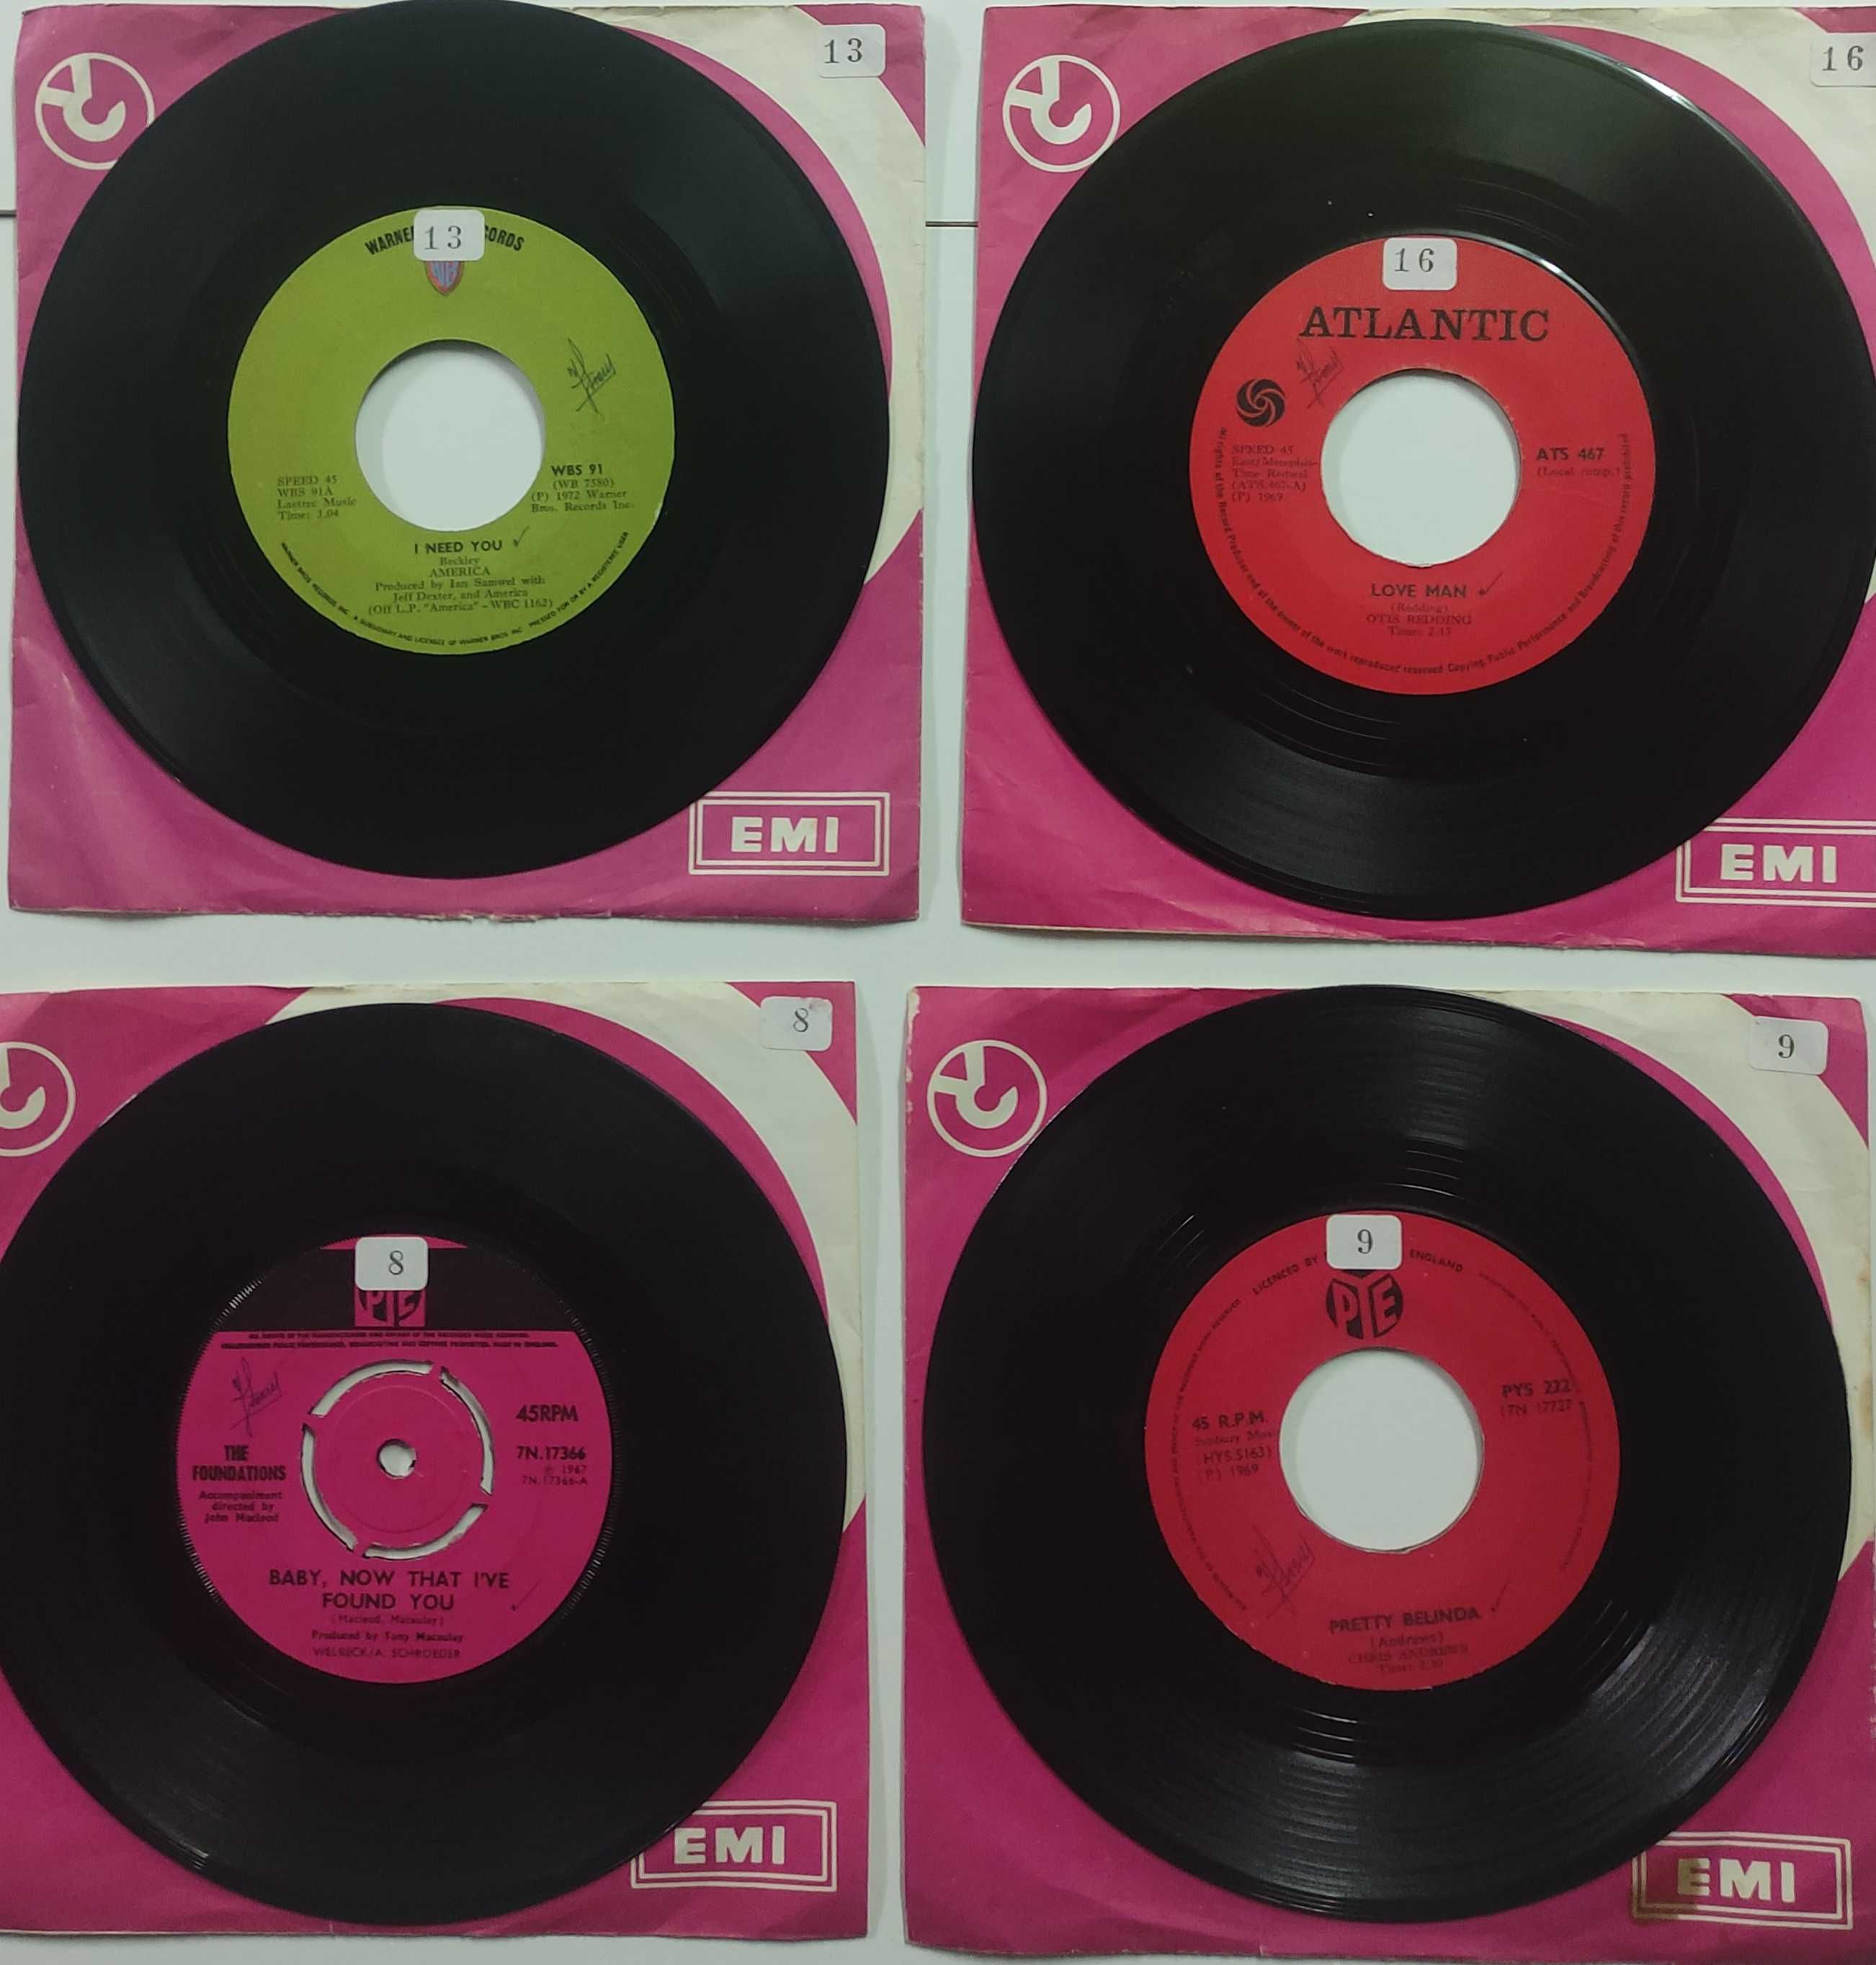 Discos antigos Vinil 7' single (pequenos)